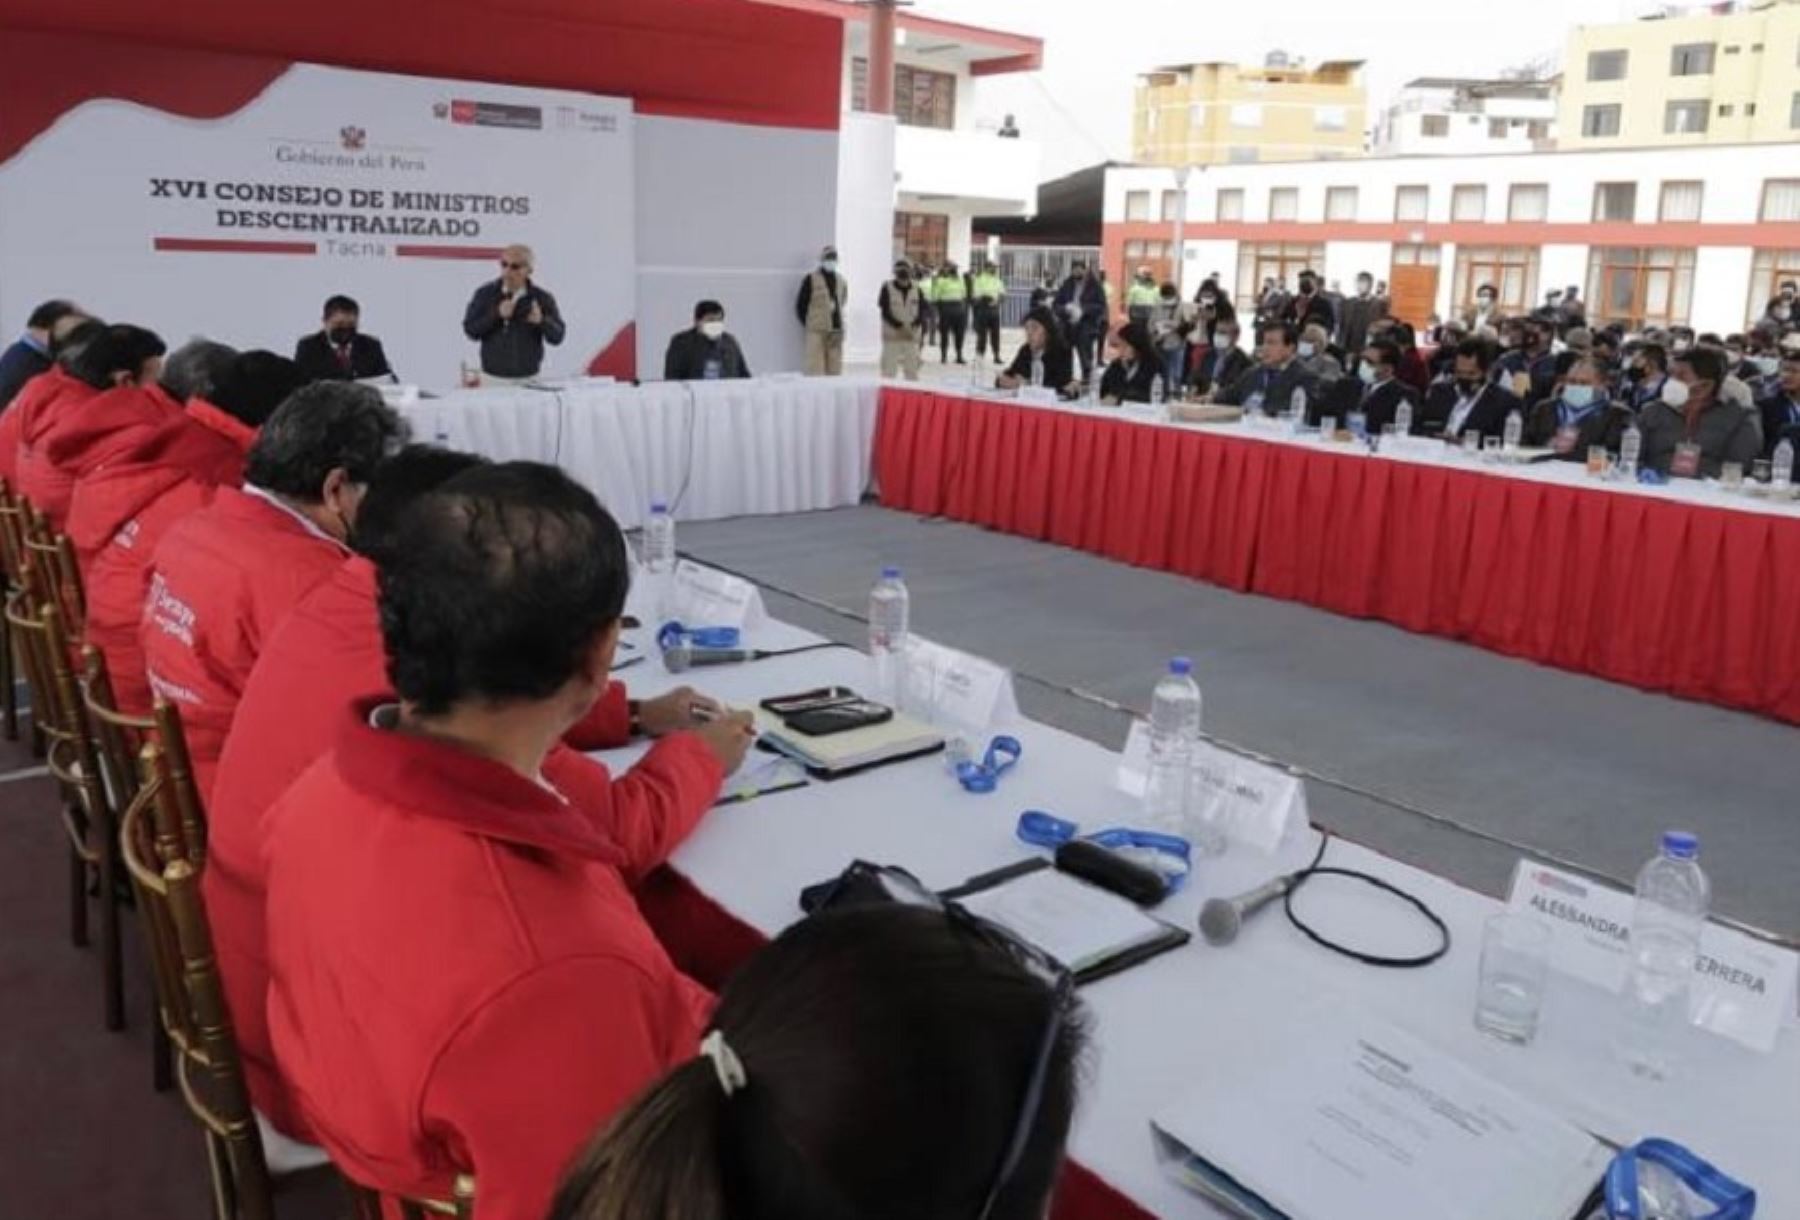 Ejecutivo realizará XVII Consejo de Ministros Descentralizado en Arequipa